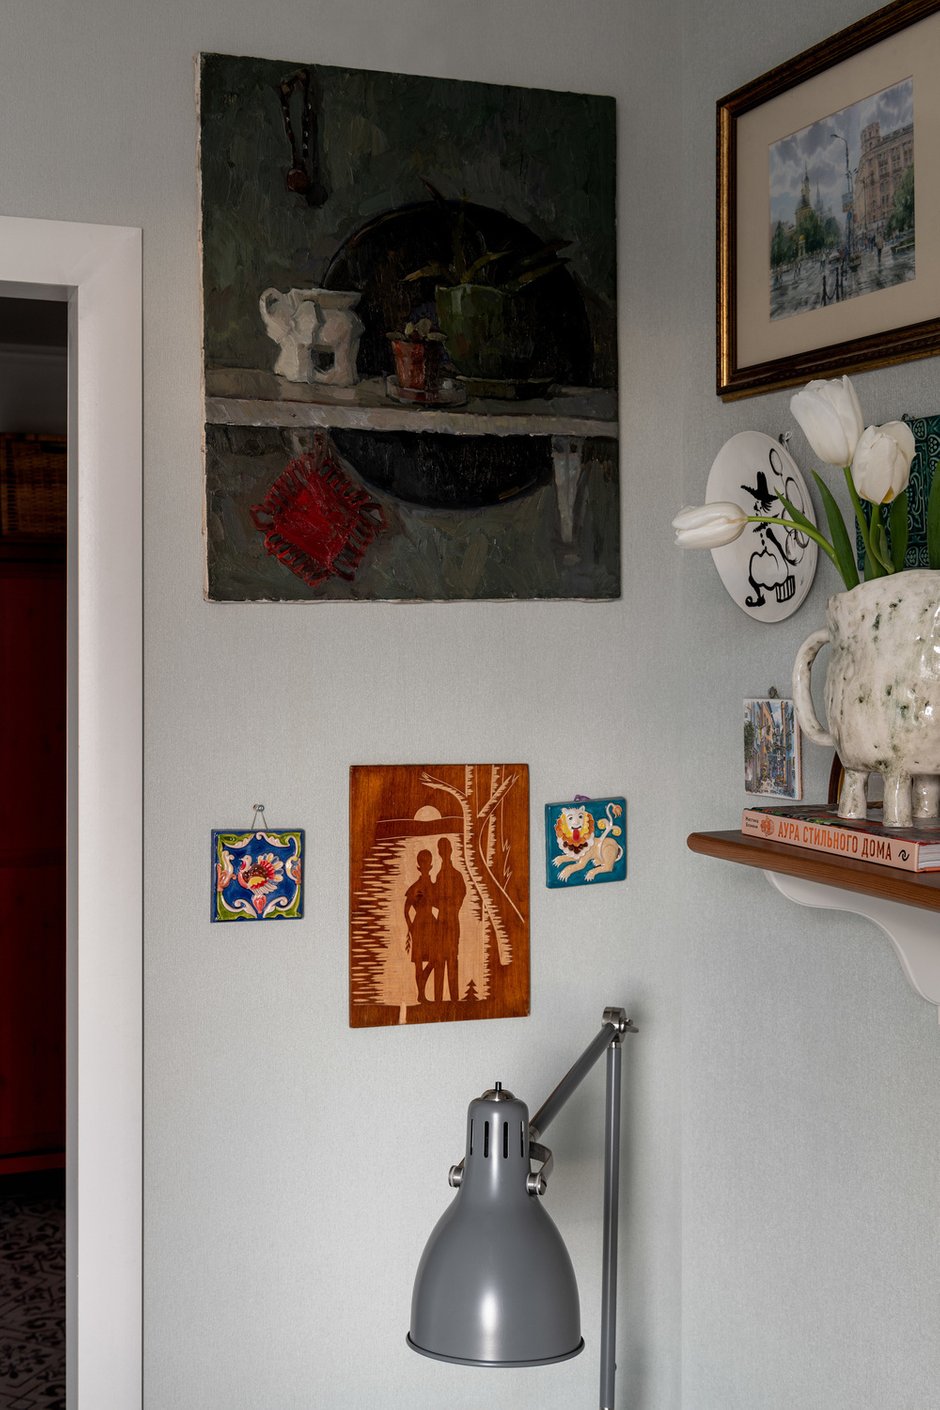 На кухне висит картина студентки художественного вуза с сайт GMOT Алибай Марлям, а также деревянная панель с парой под луной, доставшаяся от родителей.